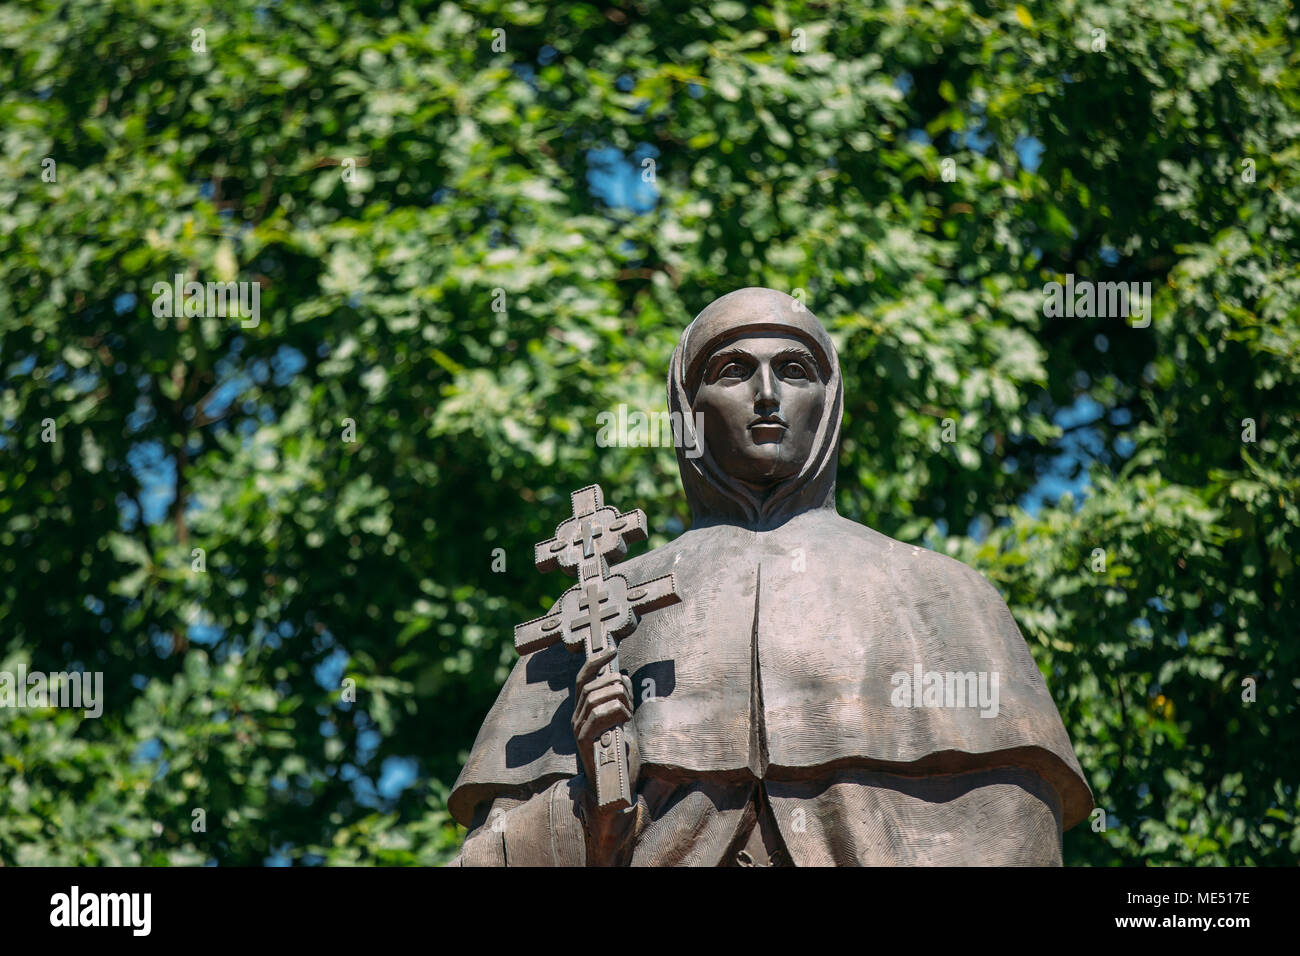 Polotsk, Belarús. Monumento a Euphrosyne de Polotsk - monja y educador. Ella glorificada en el rostro de los Santos como el Reverendo. Foto de stock